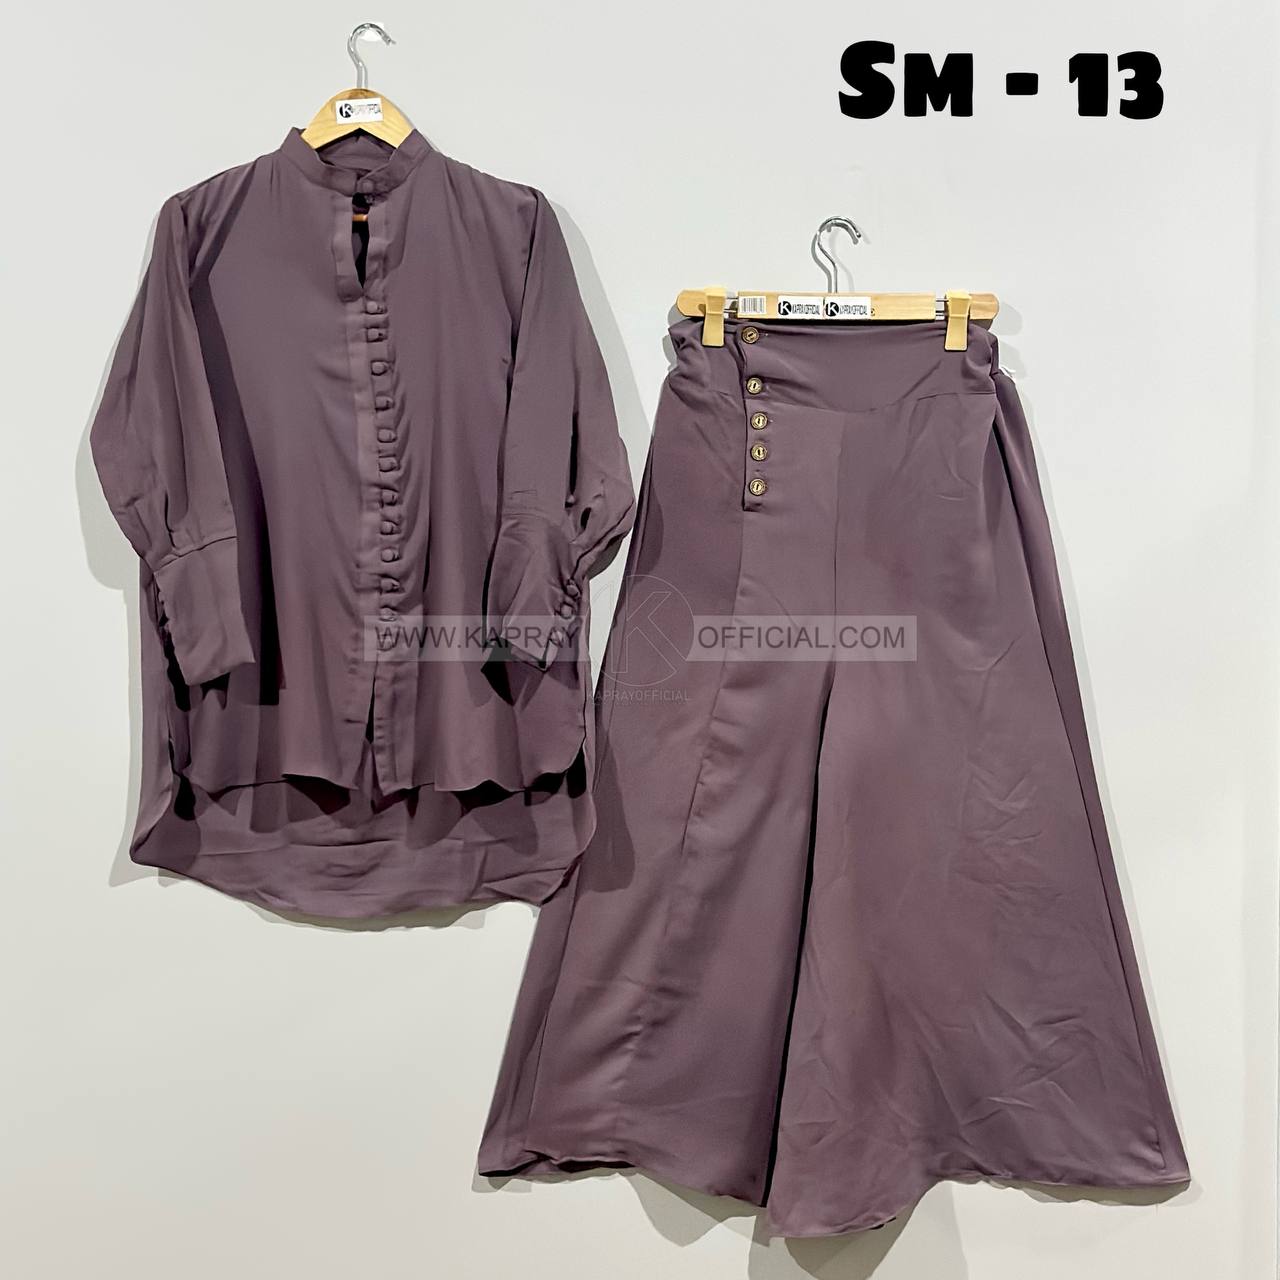 Western Short Shirt Style 2-Piece Suit K-3